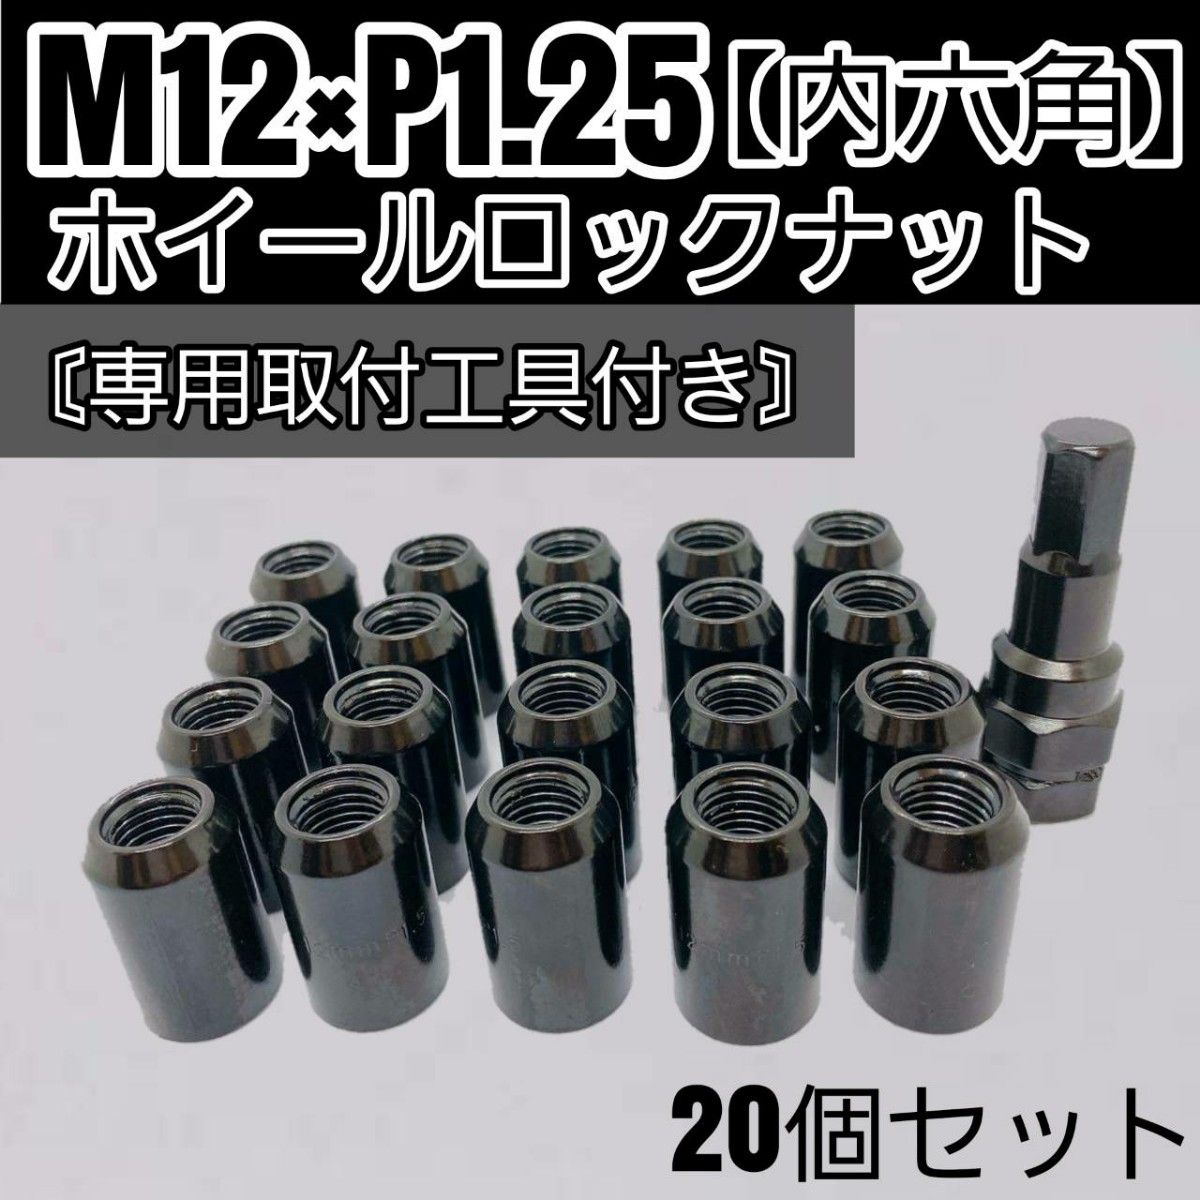 【盗難防止】ホイールロックナット 20個 スチール製 M12/P1.25 専用取付工具付 ブラック